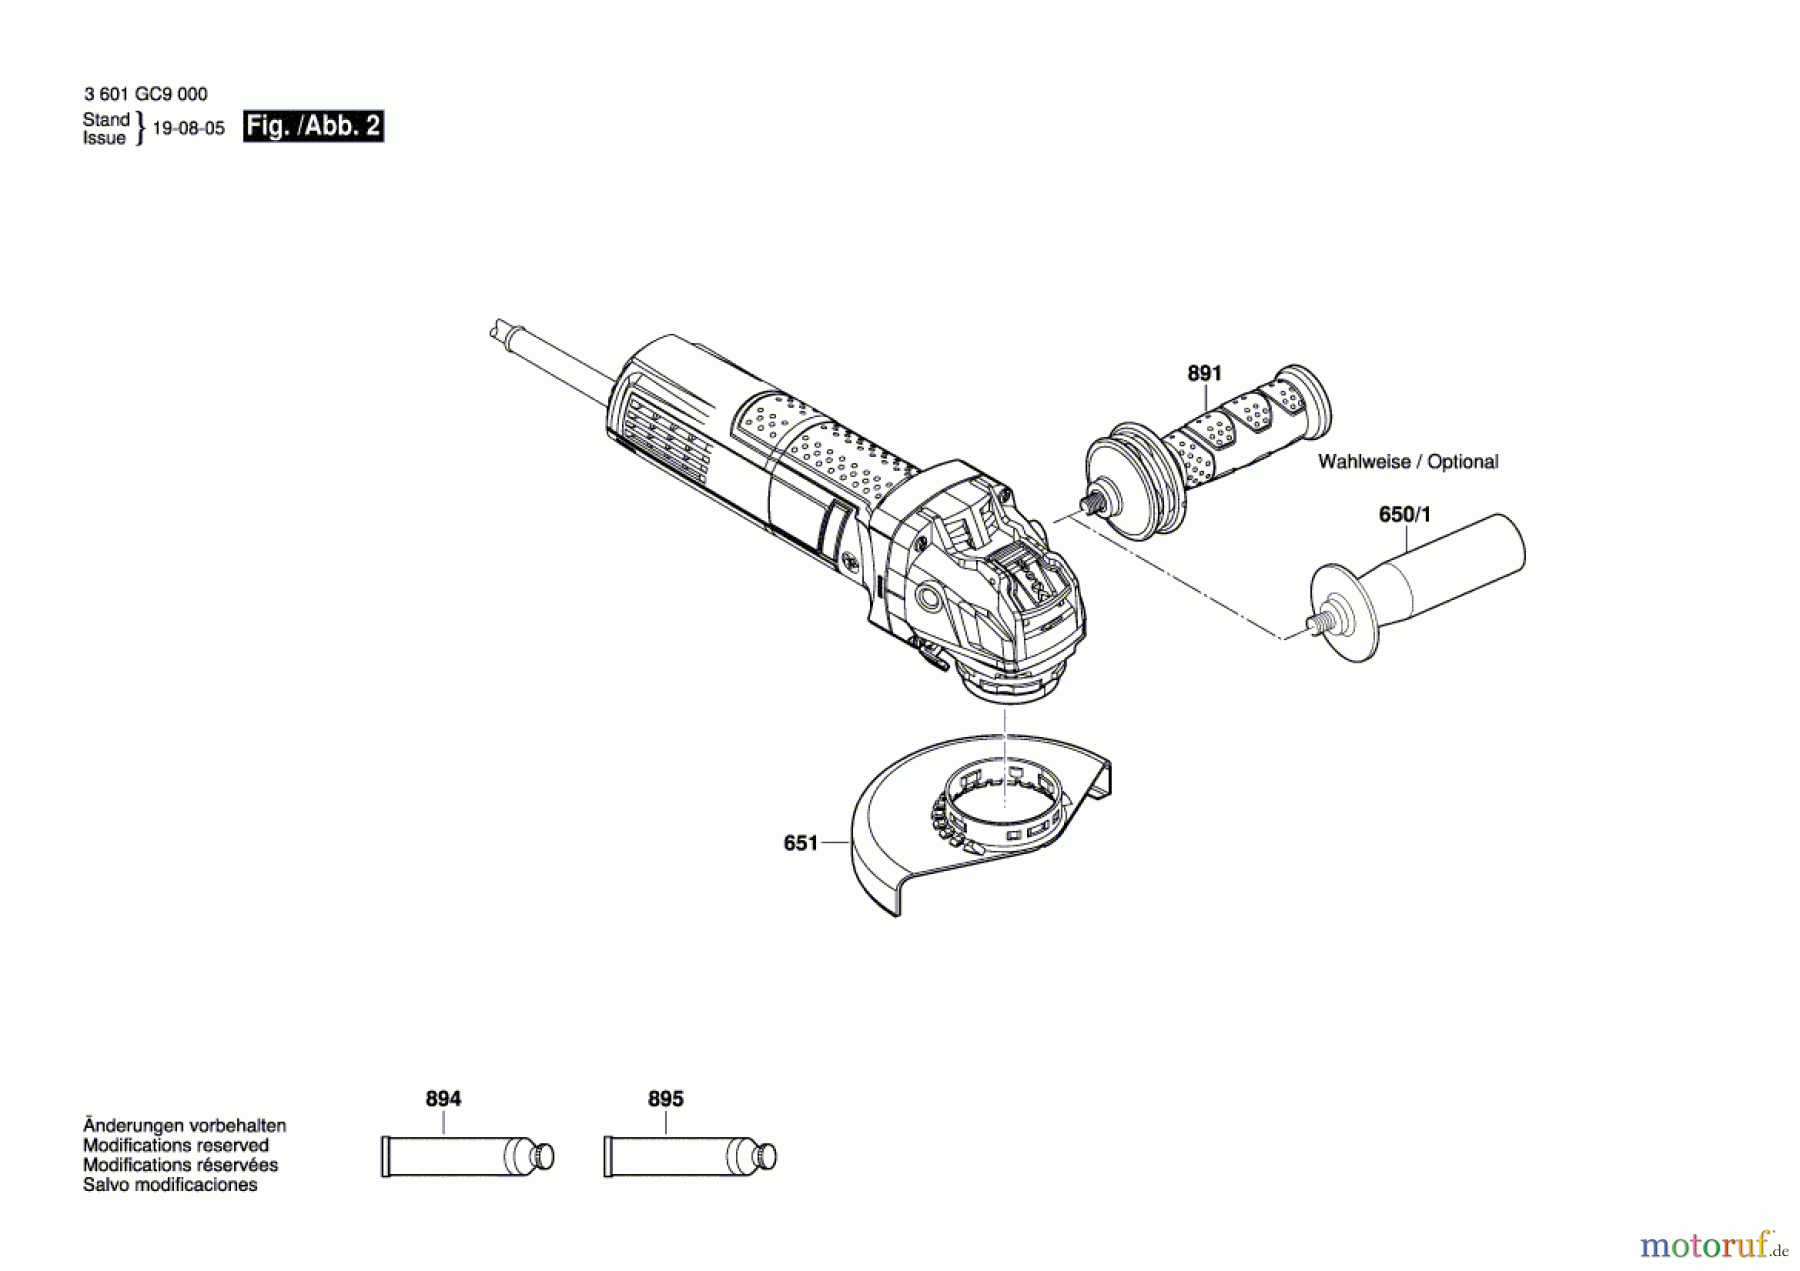  Bosch Werkzeug Winkelschleifer GWX 750-125 Seite 2